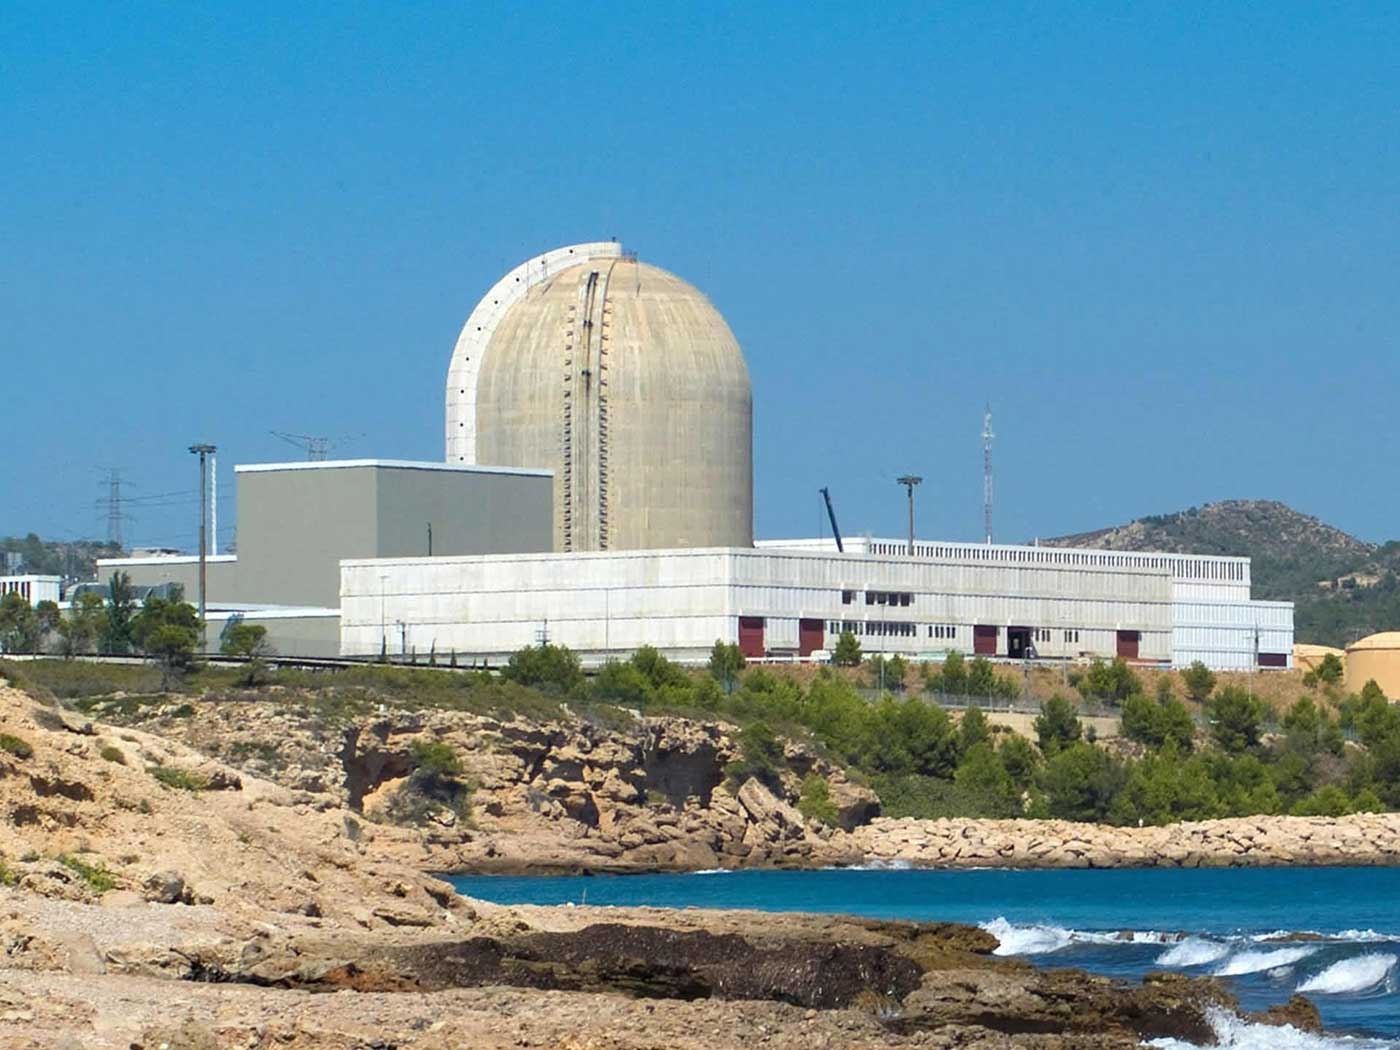 Vandellós Nuclear Power Plant